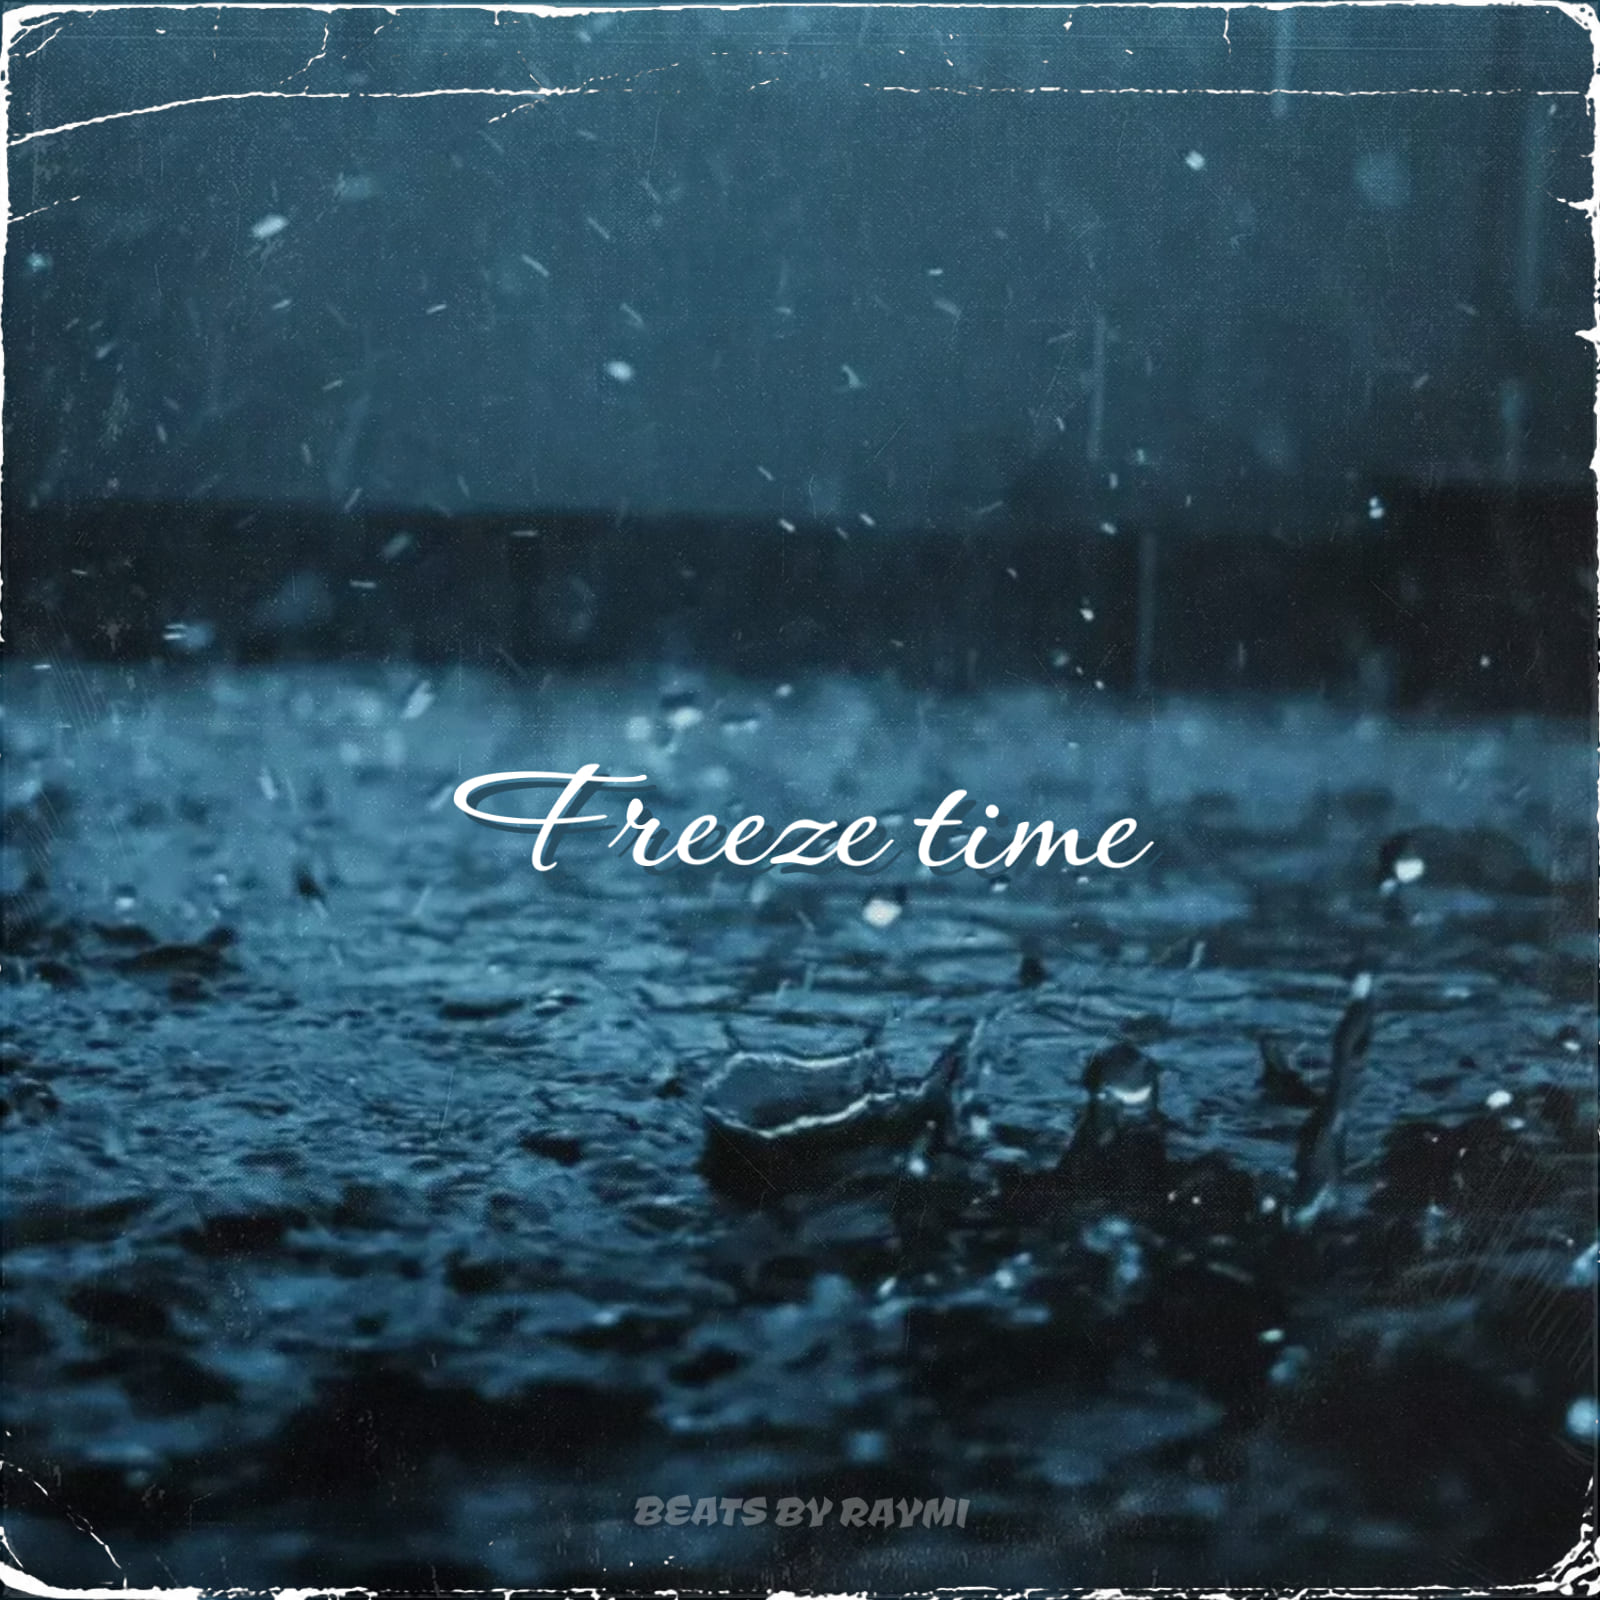 обложка бита, Raymi, музыка, cover, Freeze time (красивый, атмосферный бит)